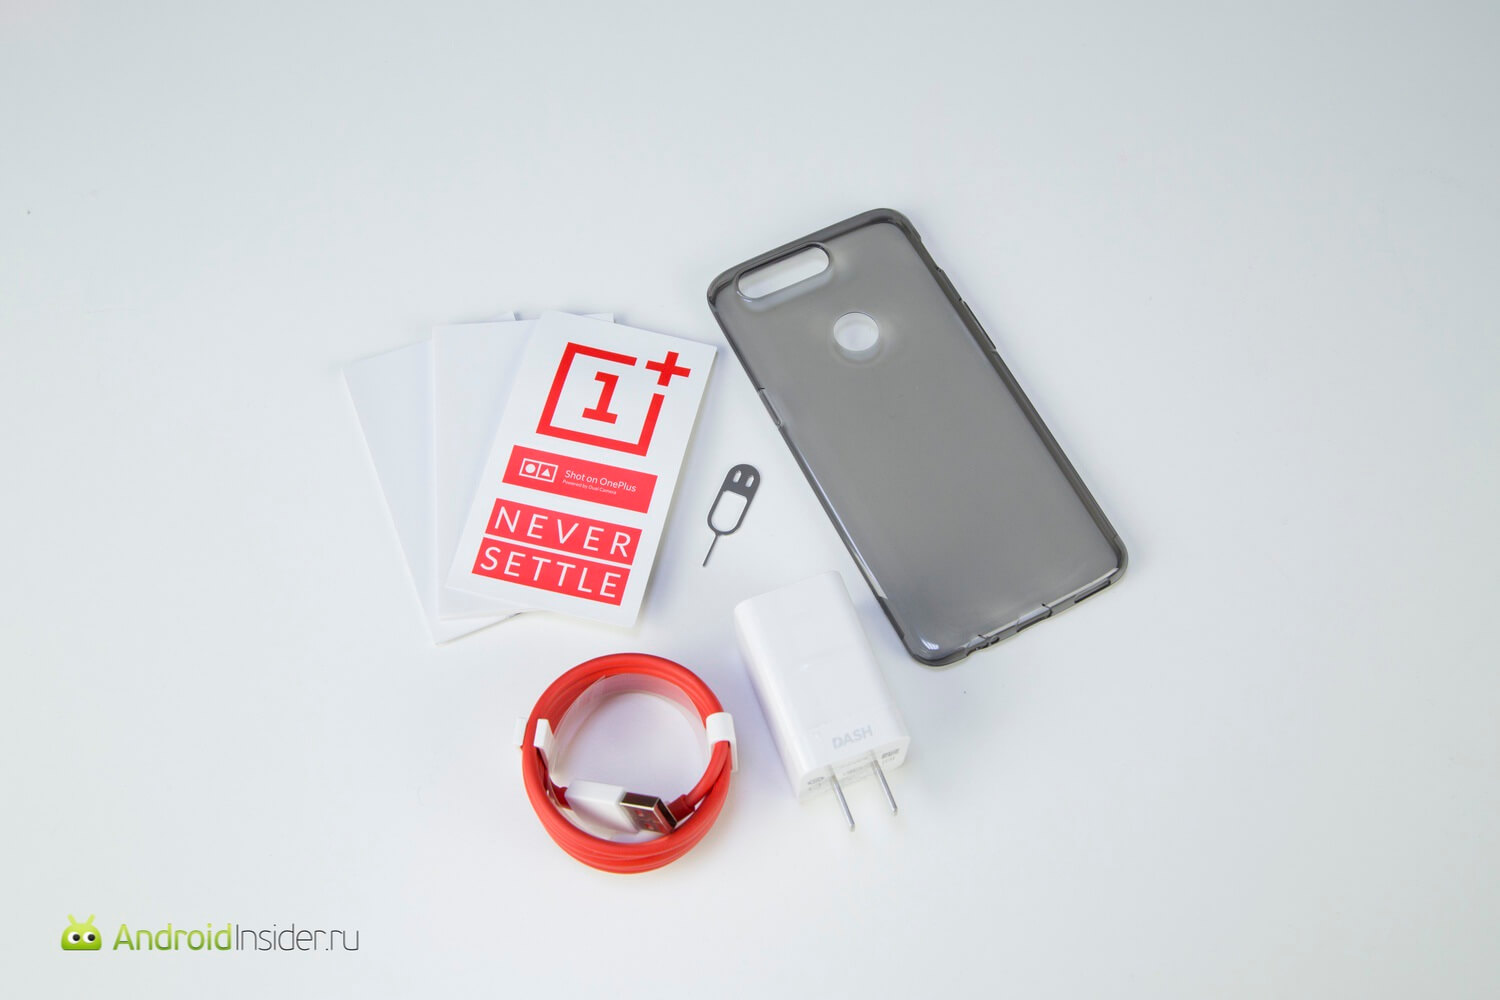 Видеообзор: OnePlus 5T — почти отличный смартфон! Содержимое коробки. Фото.